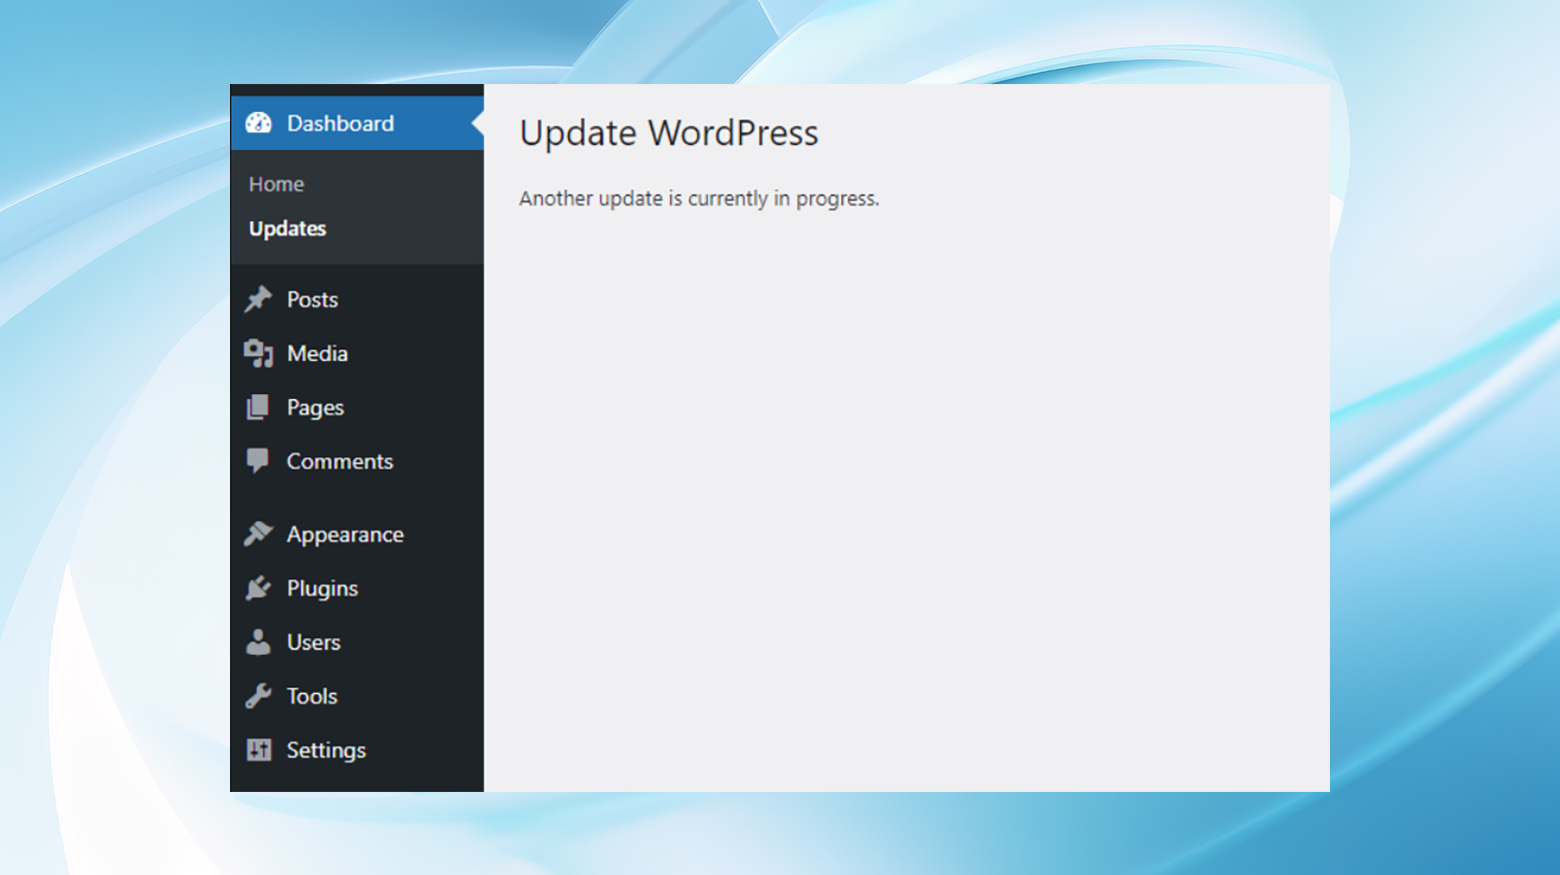 Komunikat o kolejnej aktualizacji wordpressa jest obecnie w toku na stronie aktualizacji pulpitu nawigacyjnego.